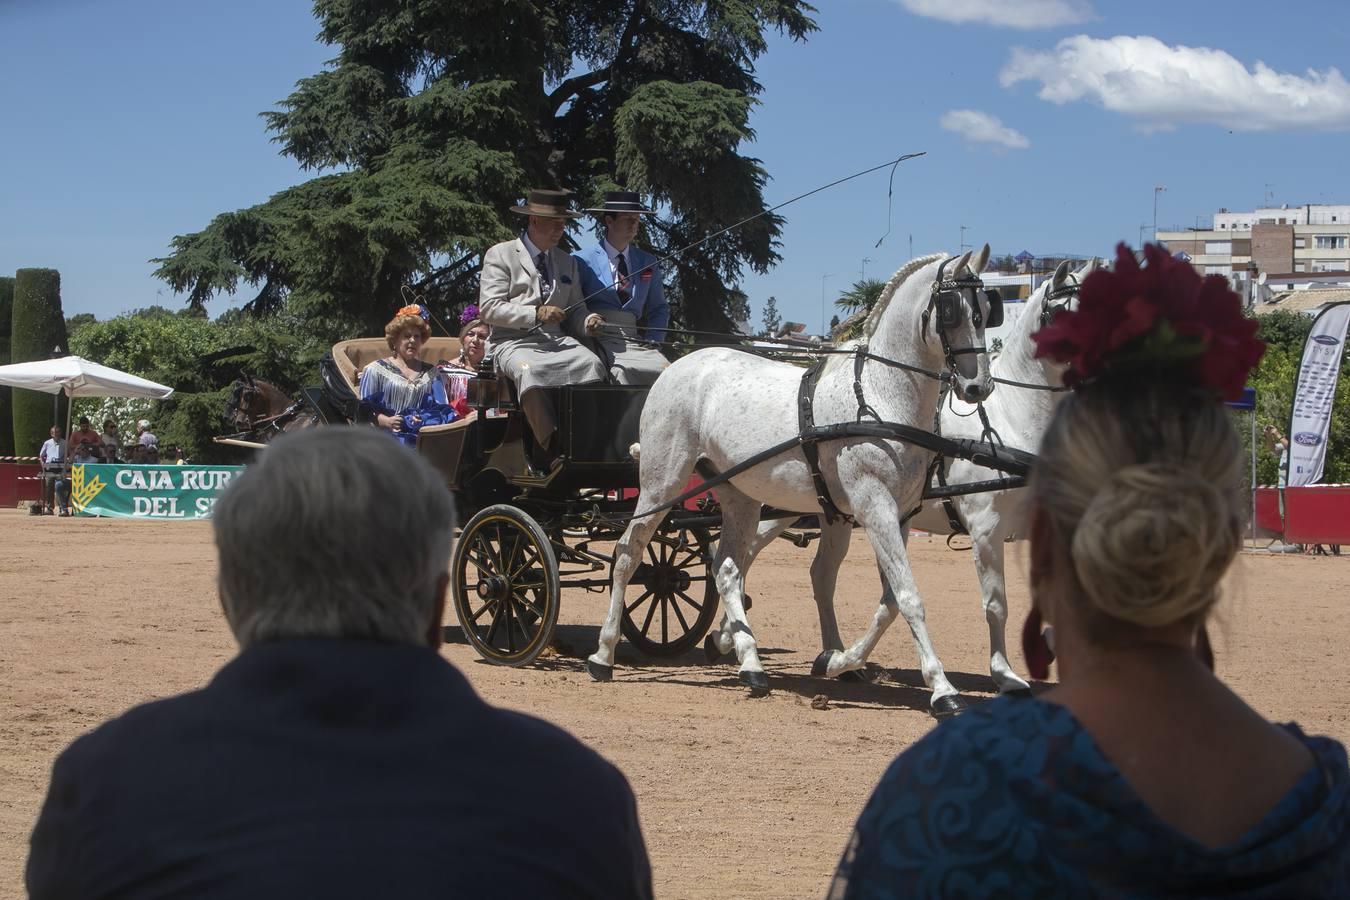 La VII Exhibición de Carruajes de Tradición de Córdoba, en imágenes